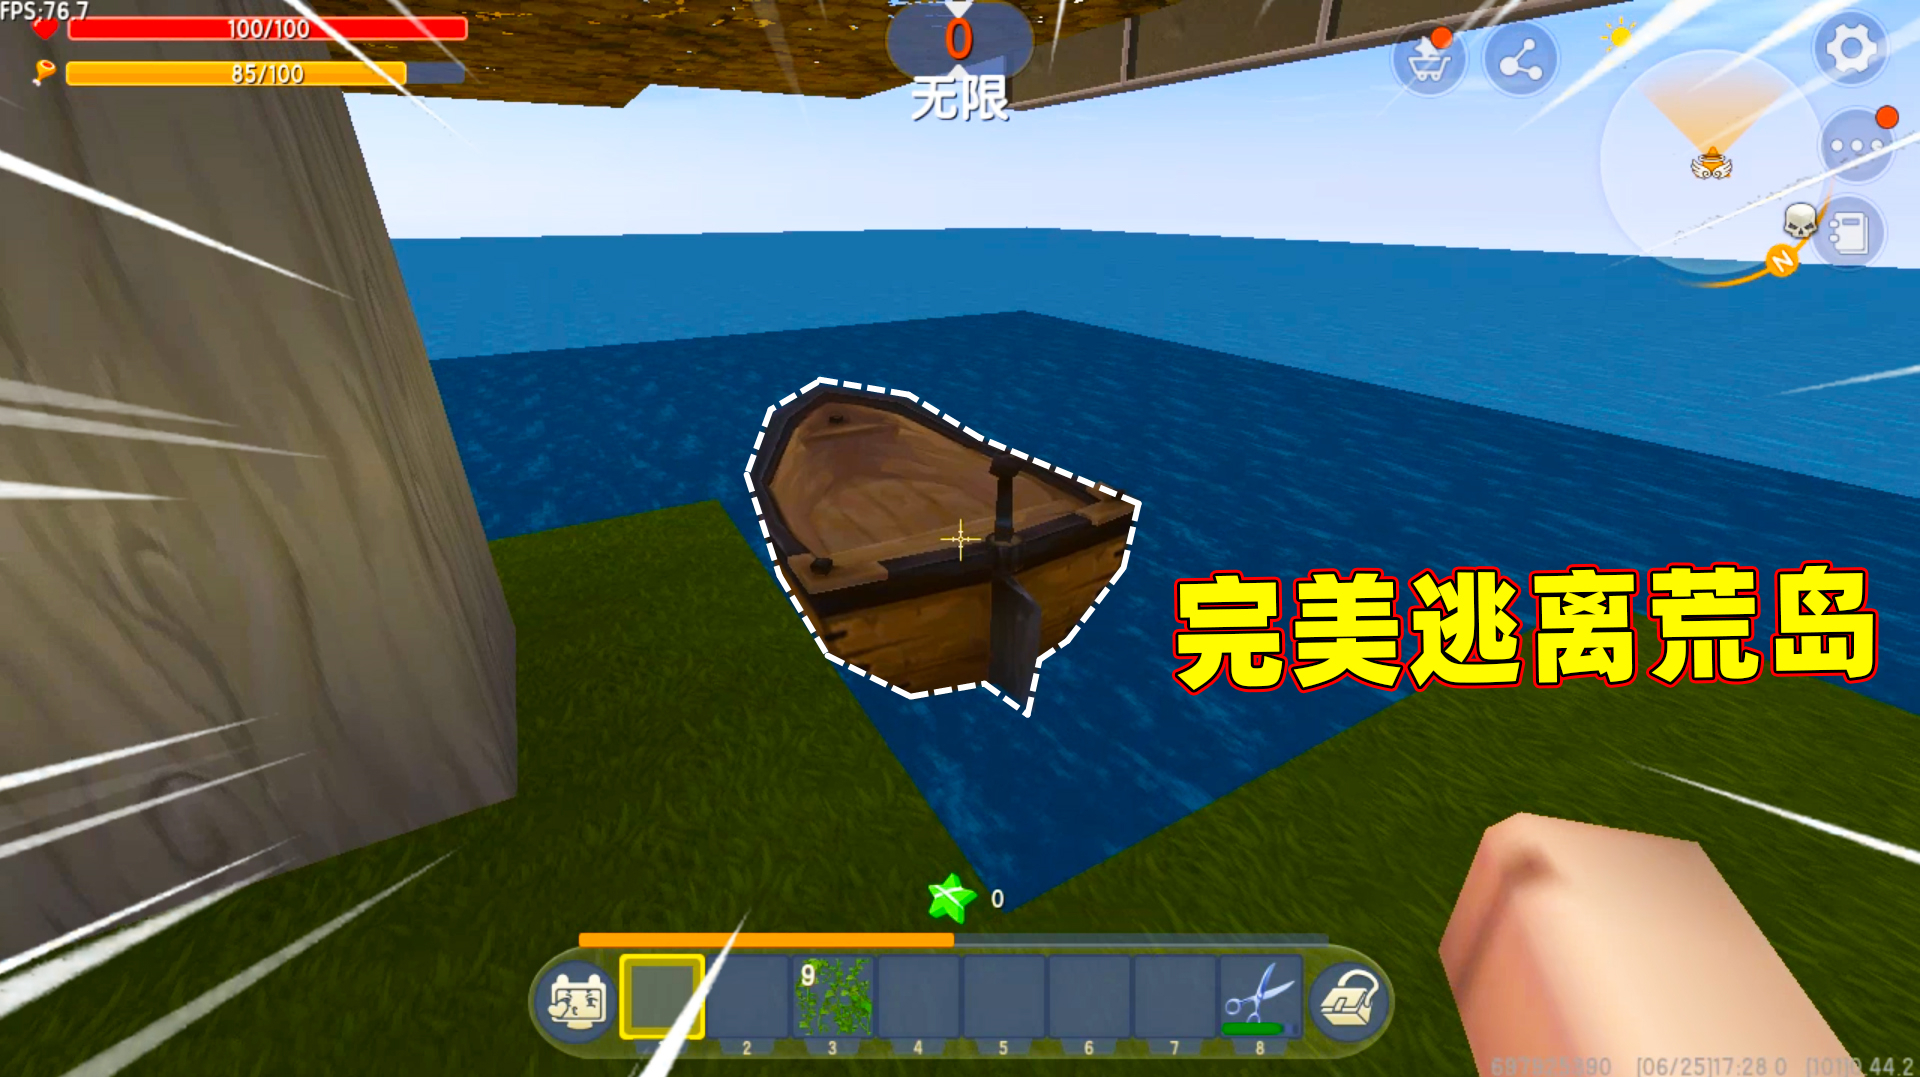 迷你世界:荒岛求生!小蕾成功生存下去,还制作木筏完美逃离荒岛